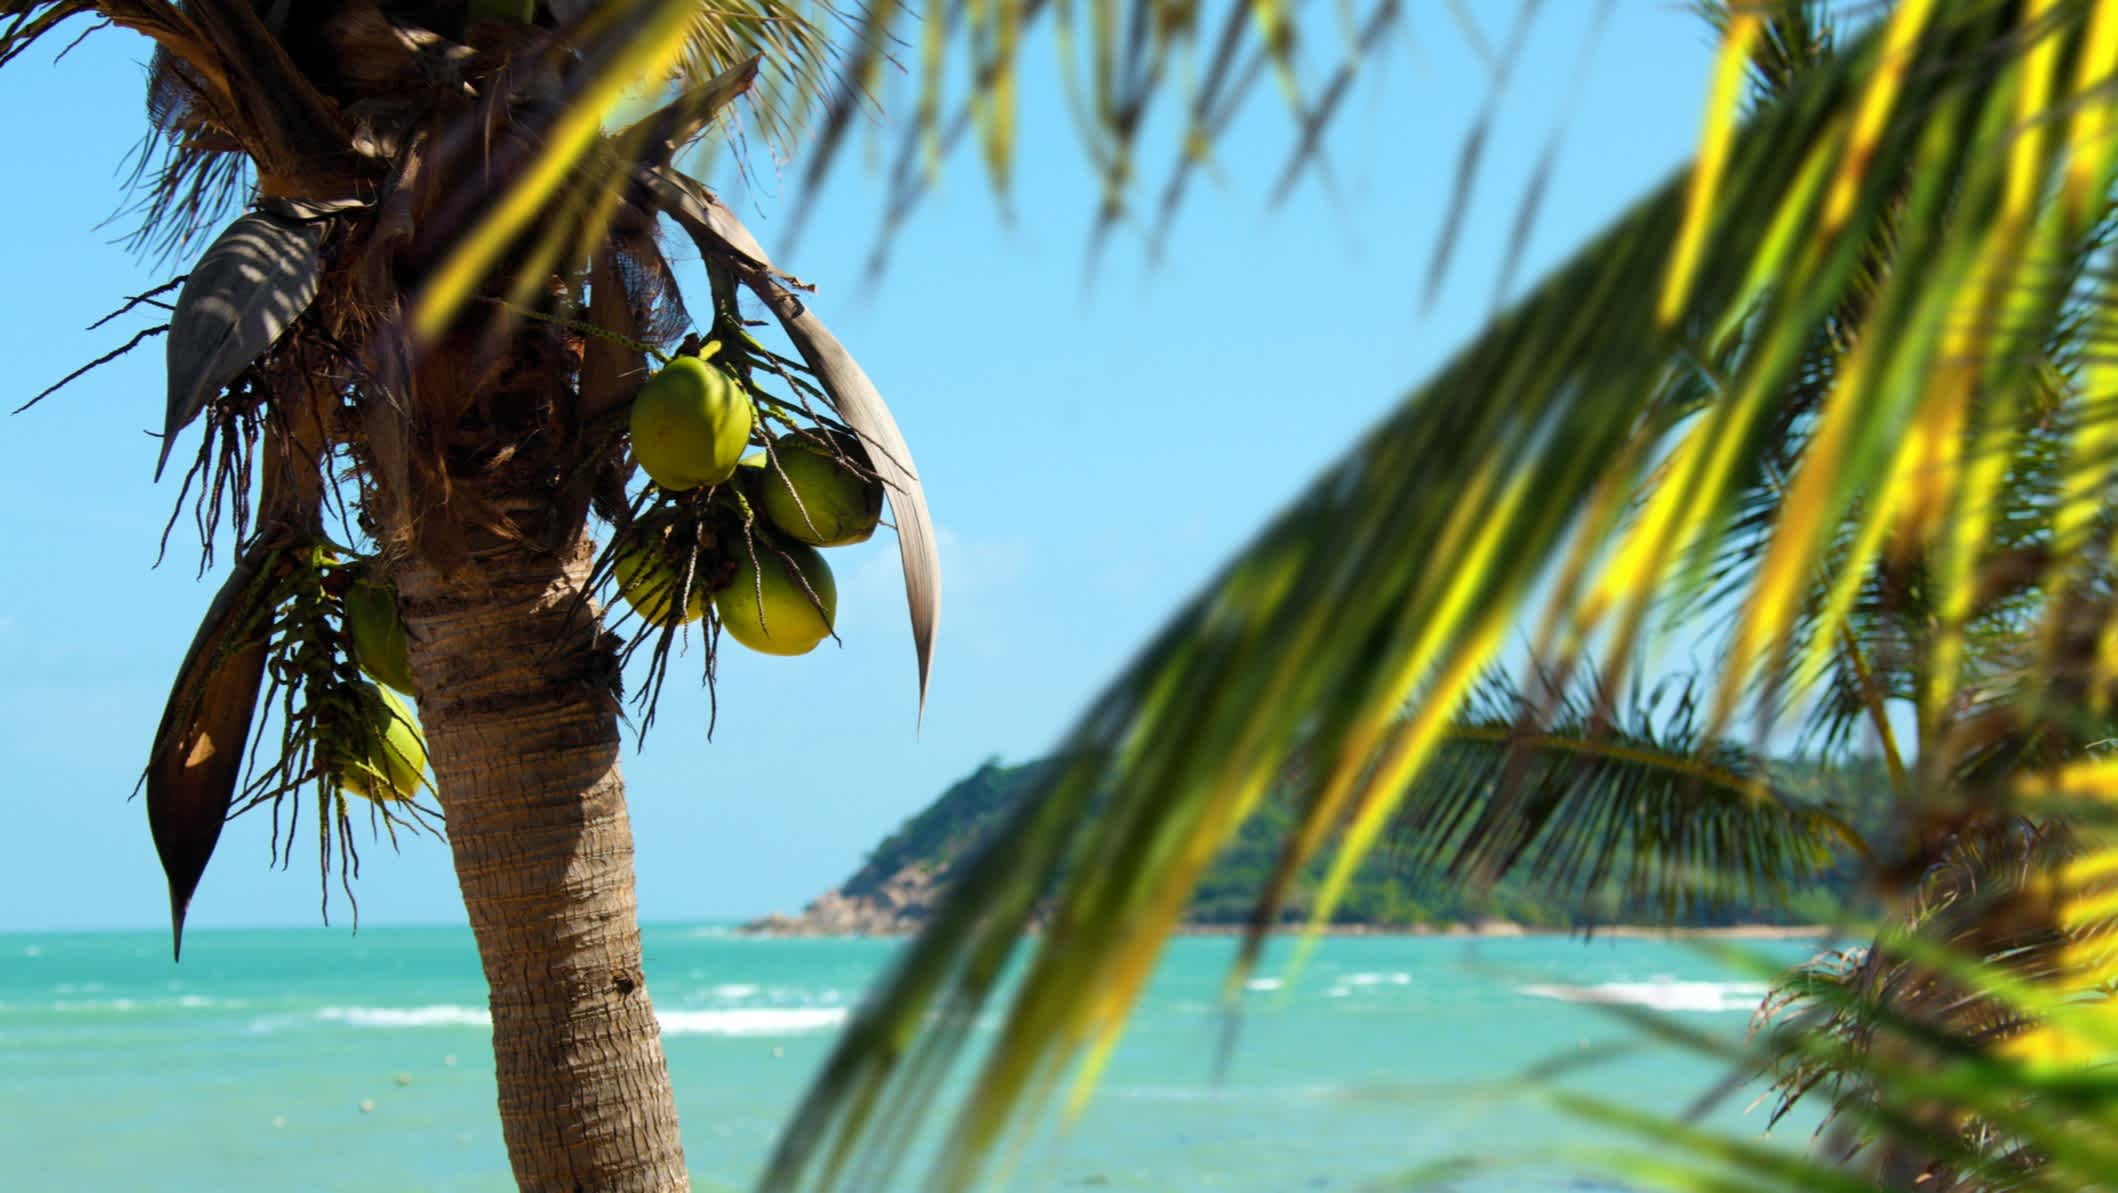 Magnifique paysage d'île tropicale avec palmier les jours ensoleillés